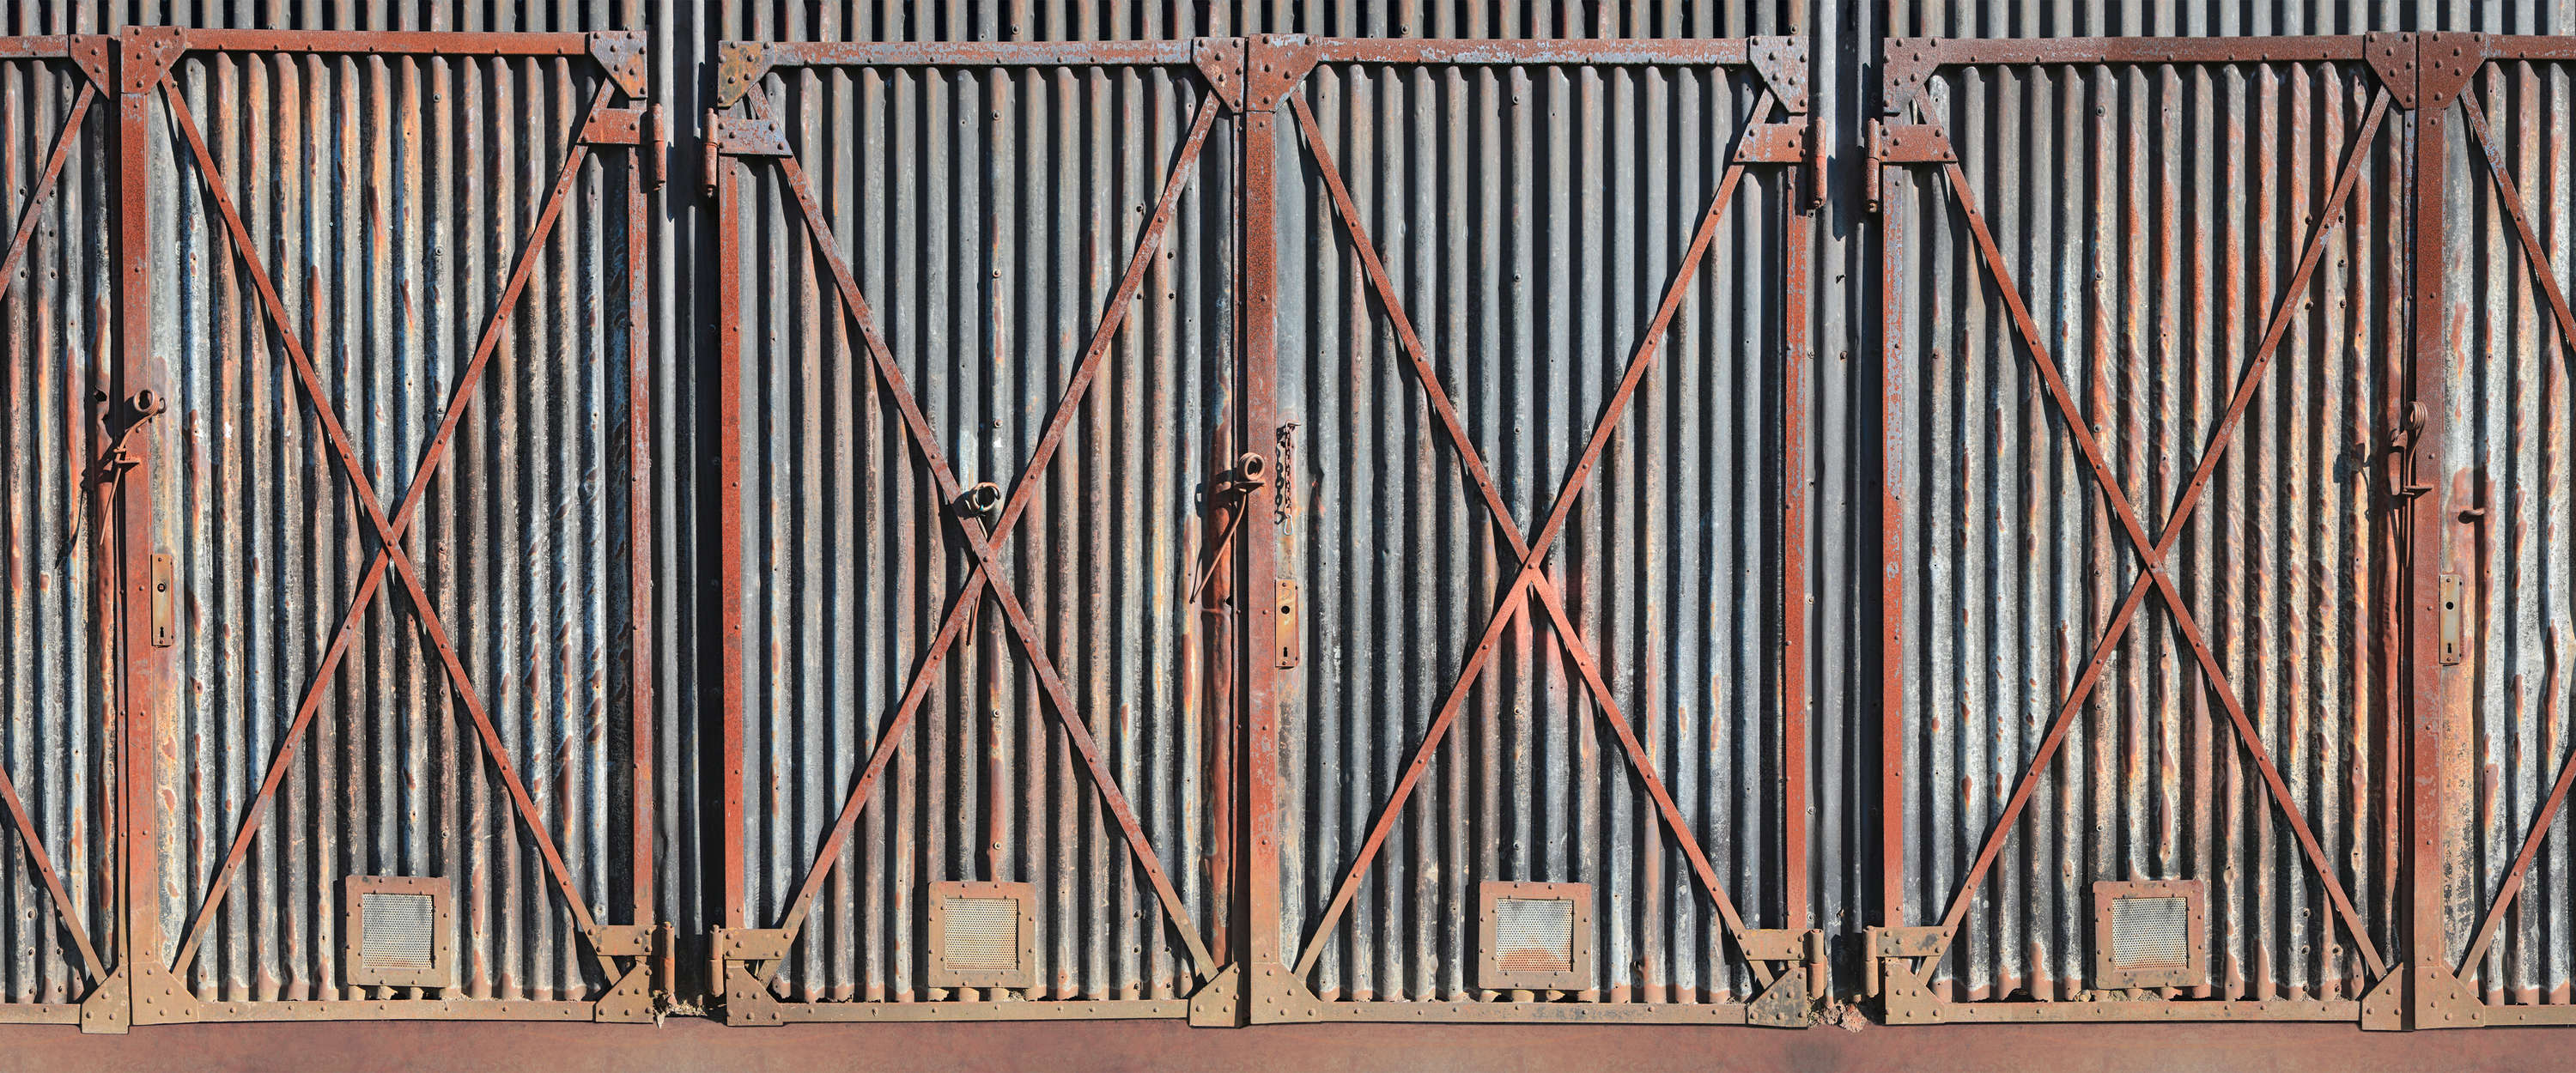             Muurschildering stalen poort roestig in industriële stijl
        